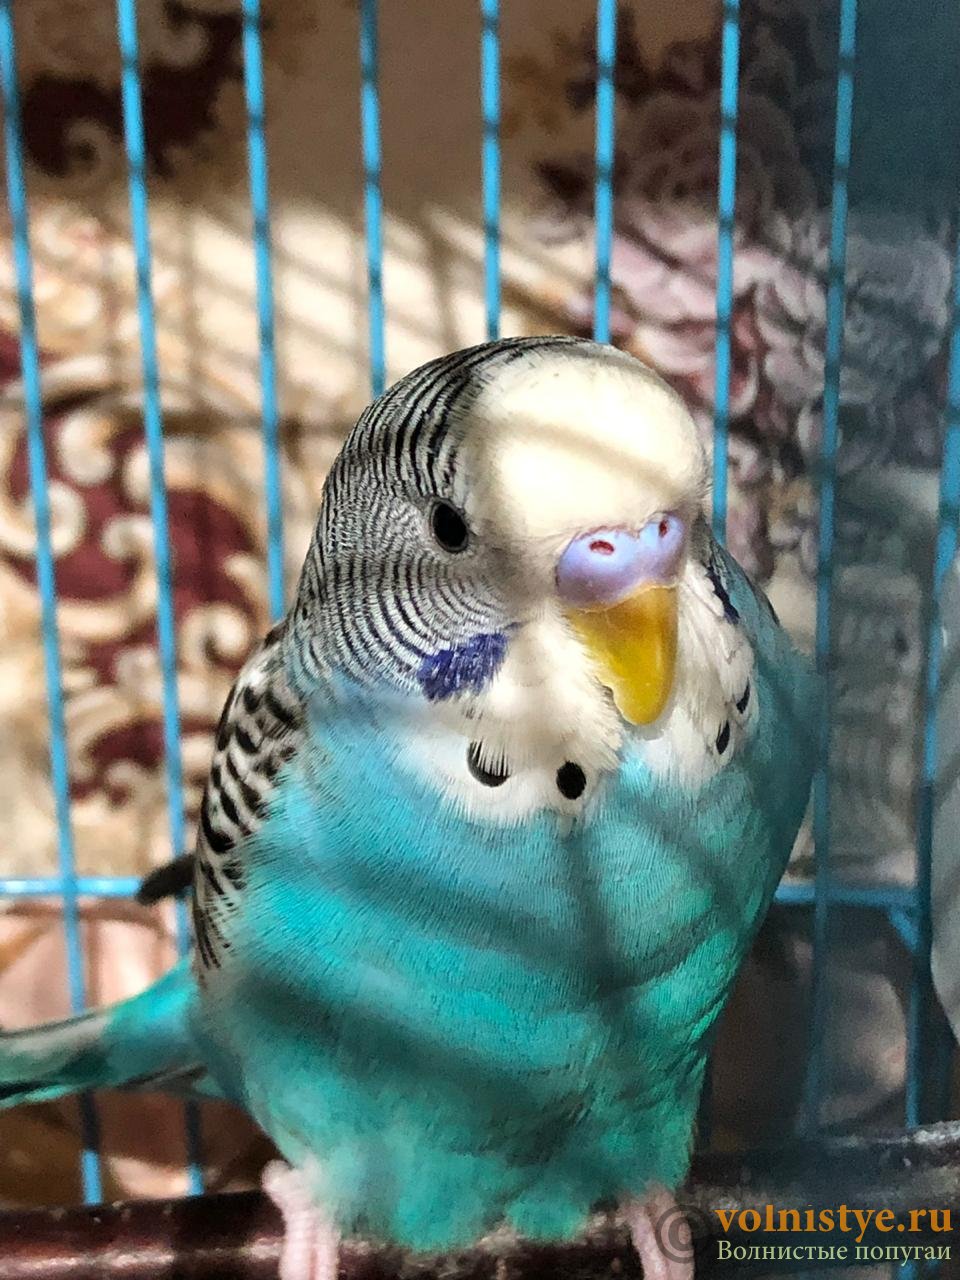 Почему чихает попугай? | болезни попугаев
почему попугай может чихать? | болезни попугаев